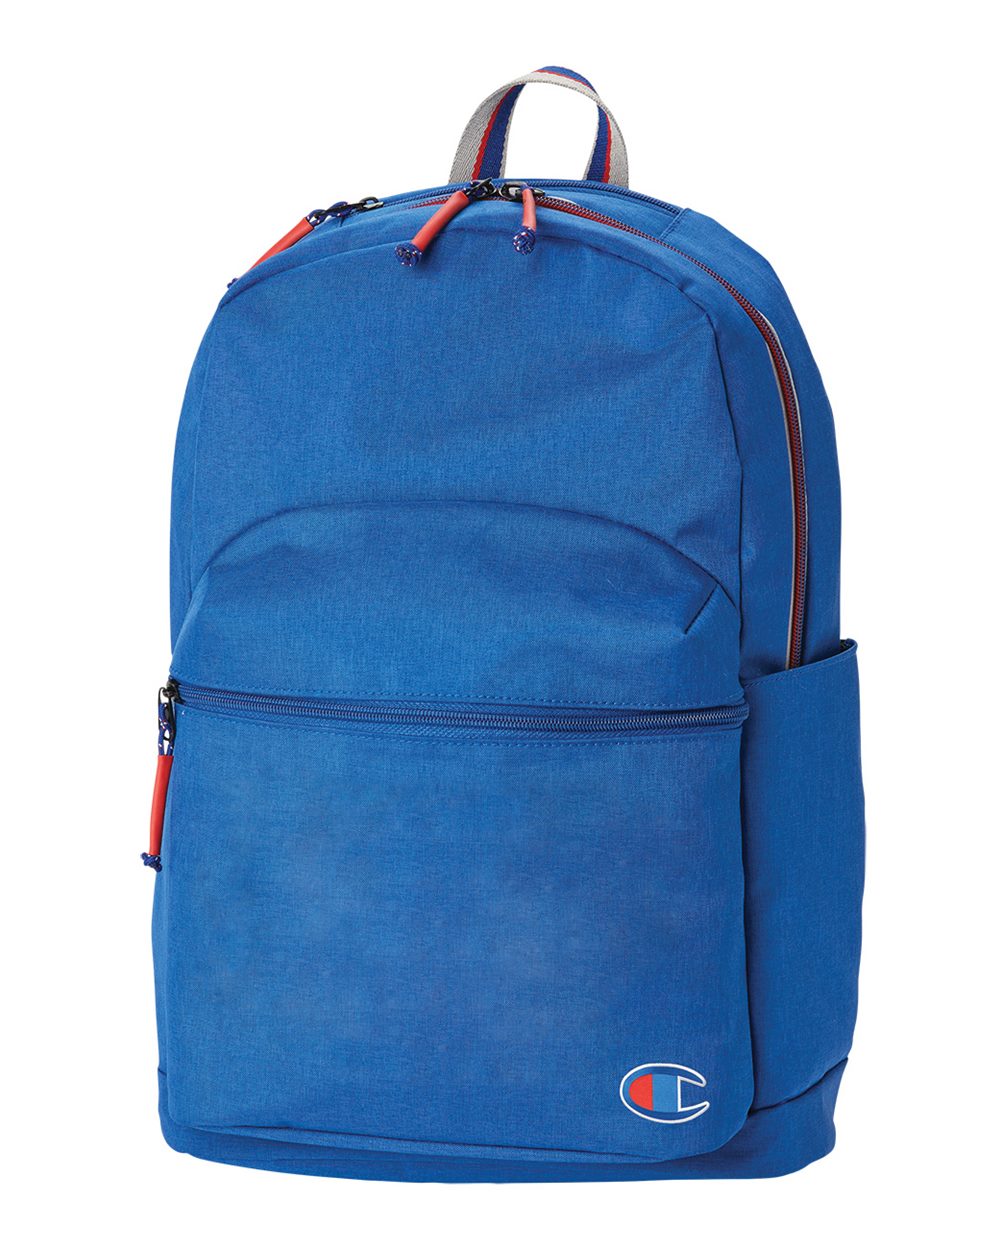 Champion CS1002 - 21L Backpack $34.99